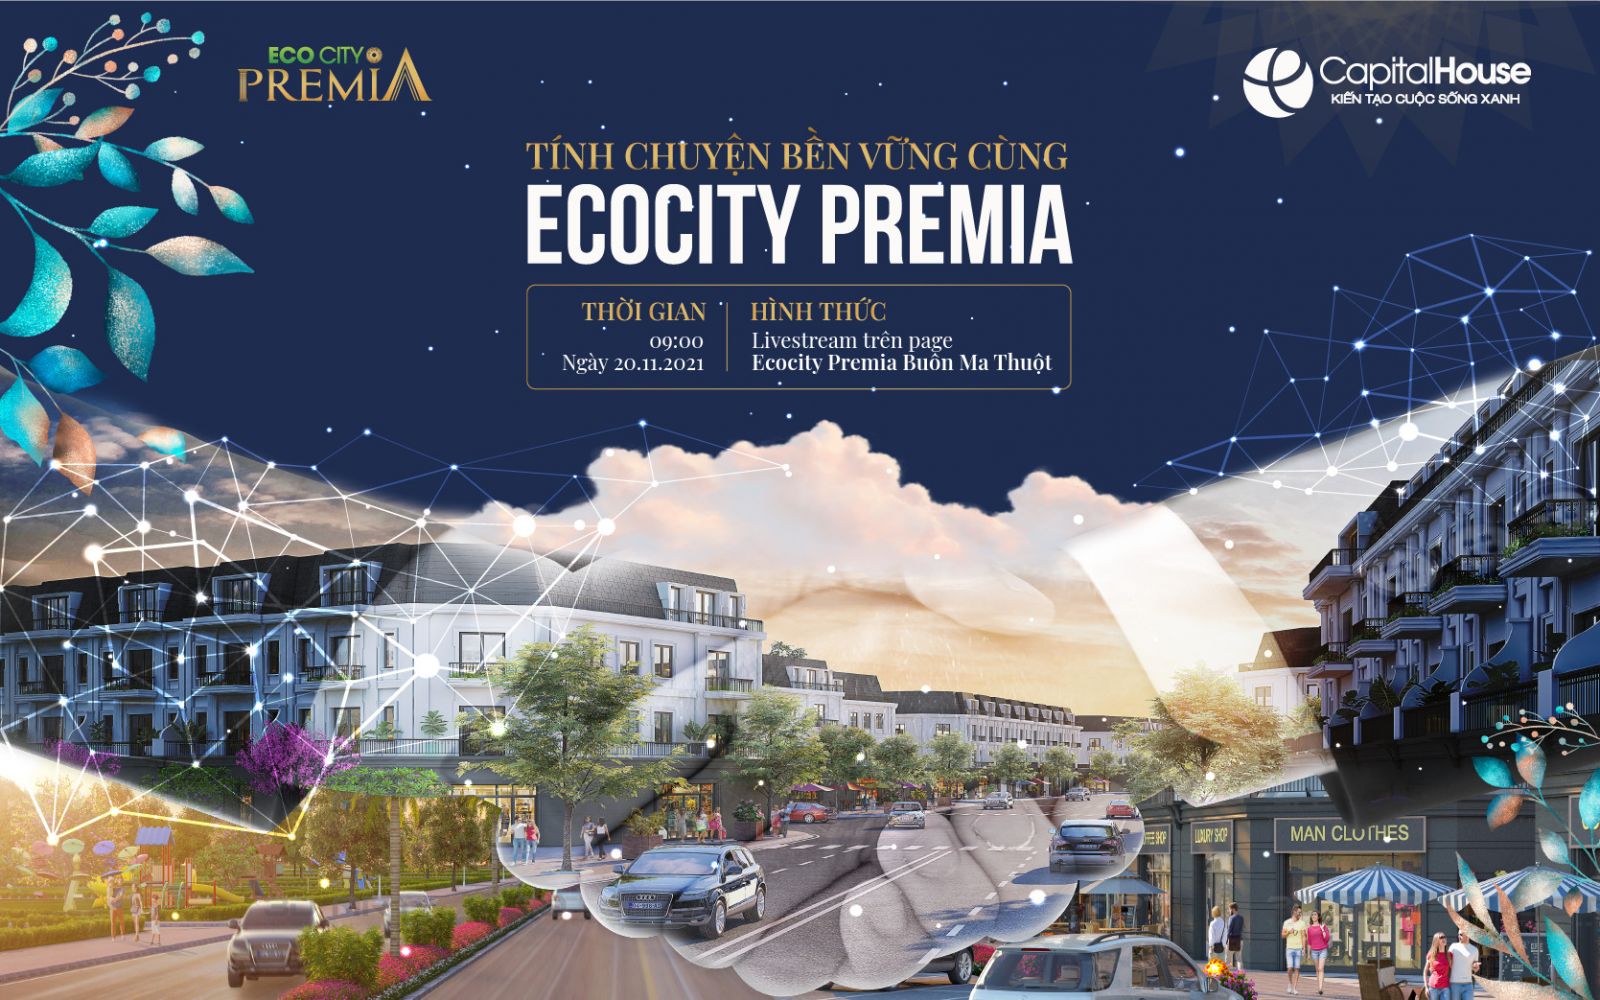 Sự kiện trực tuyến “Tính chuyện bền vững cùng EcoCity Premia” phát trực tuyến được tổ chức vào lúc 9h00 ngày 20/11